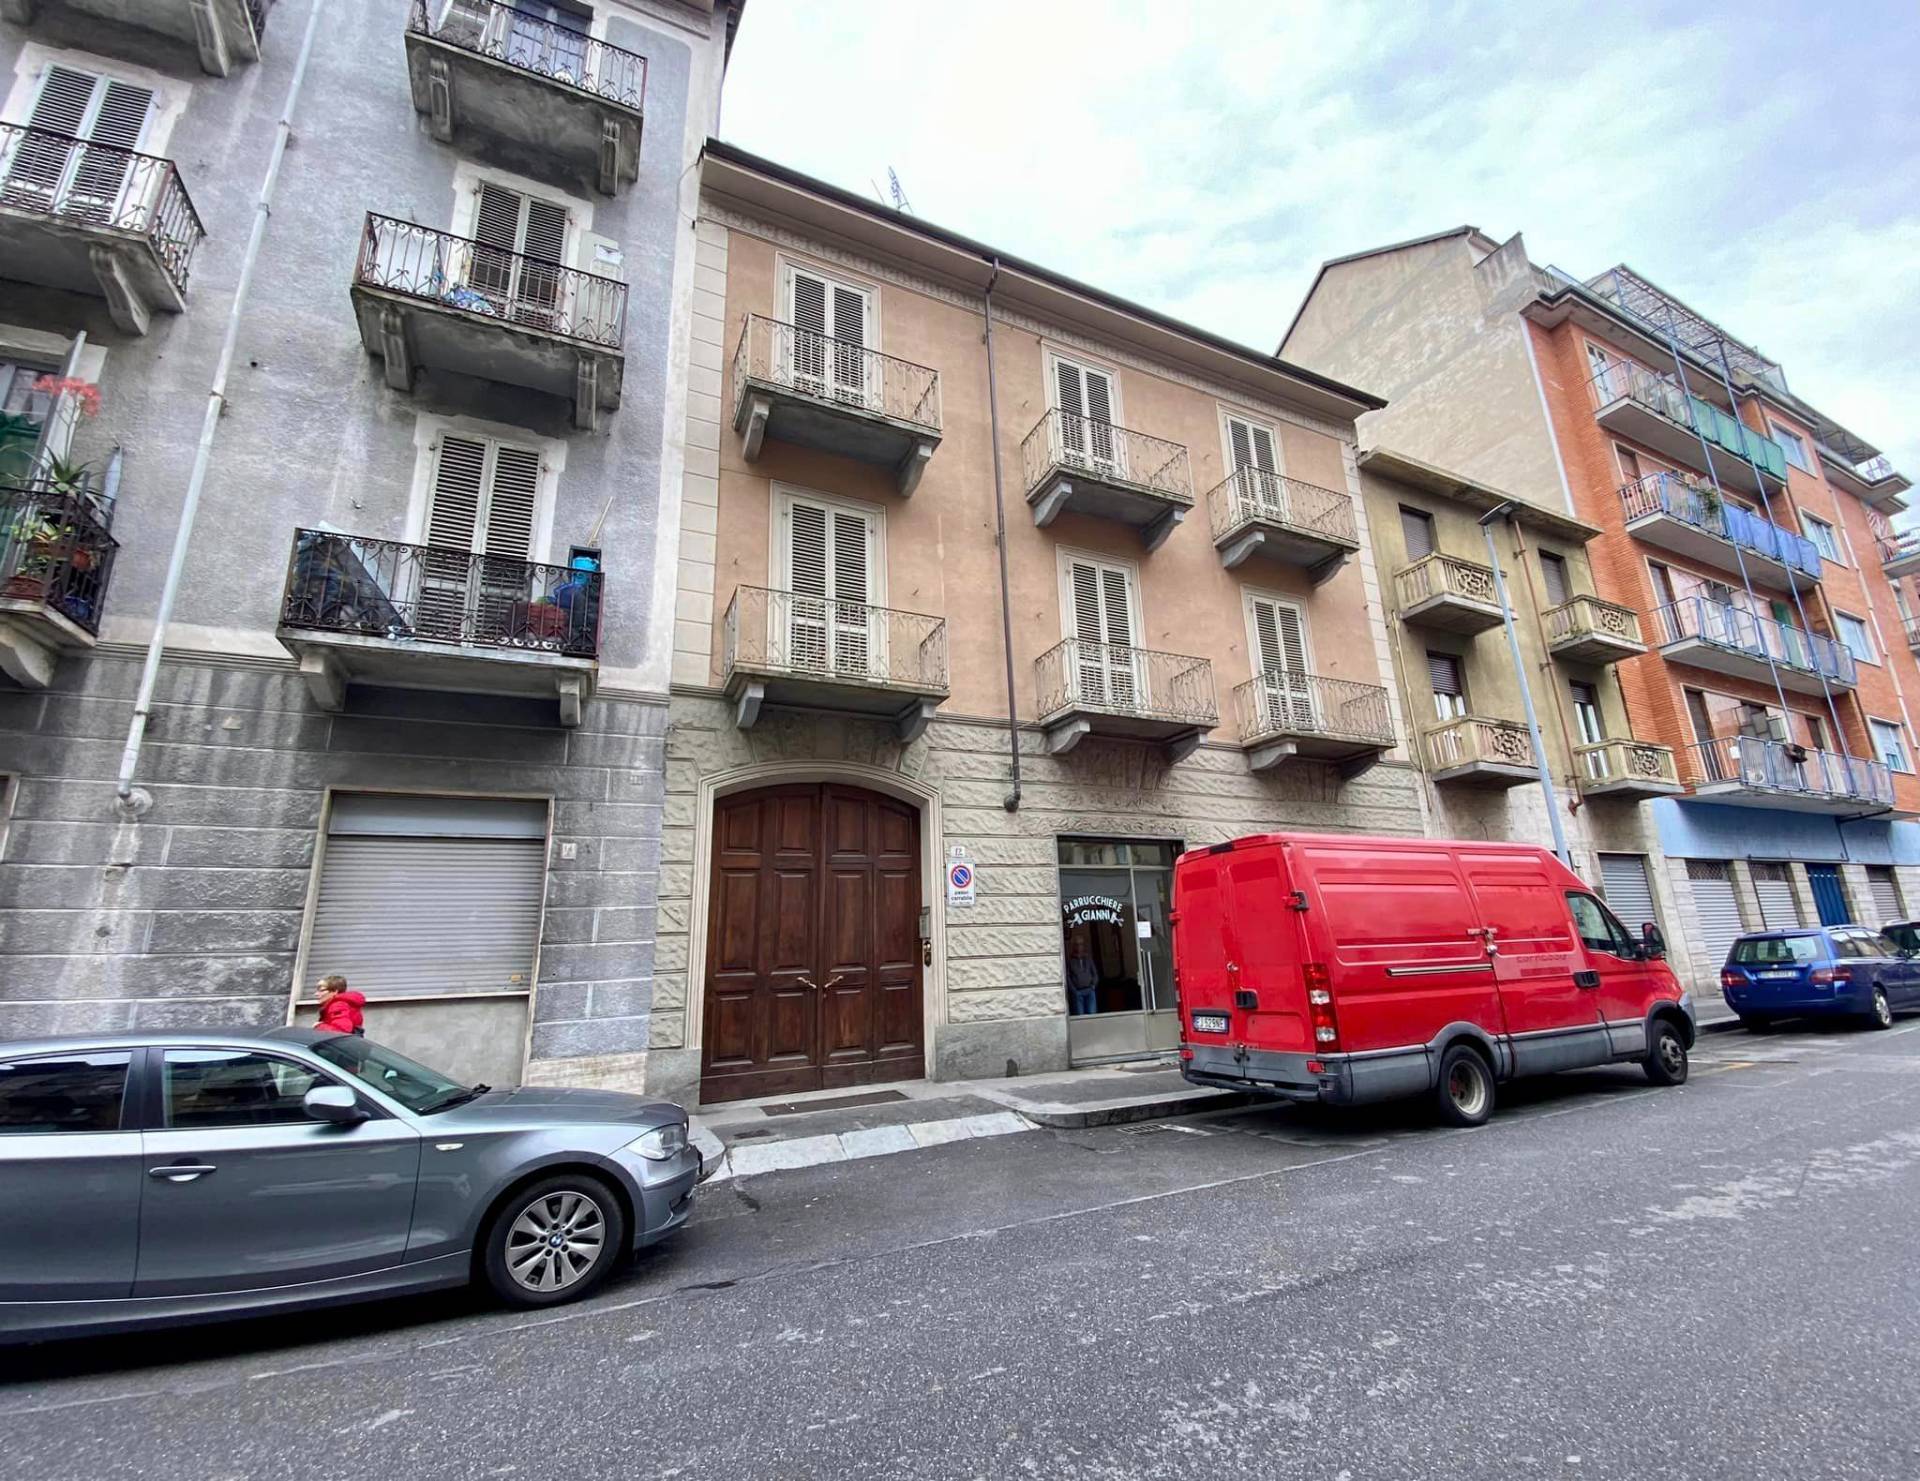 Stabile - Palazzo - Barriera Milano